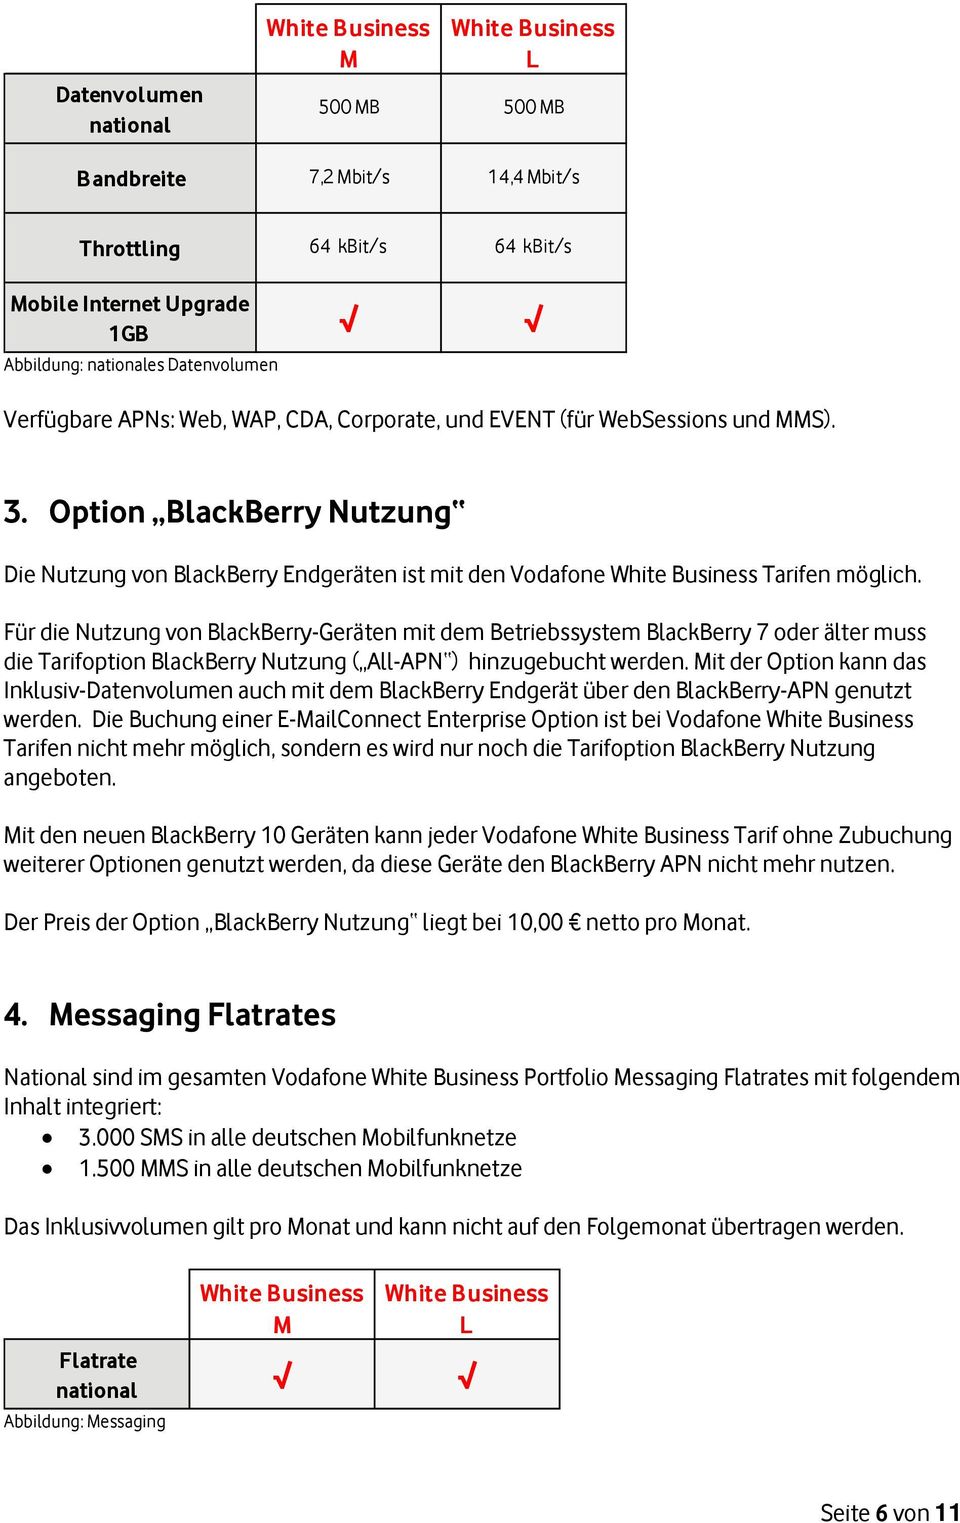 Für die Nutzung von BlackBerry-Geräten mit dem Betriebssystem BlackBerry 7 oder älter muss die Tarifoption BlackBerry Nutzung ( All-APN ) hinzugebucht werden.